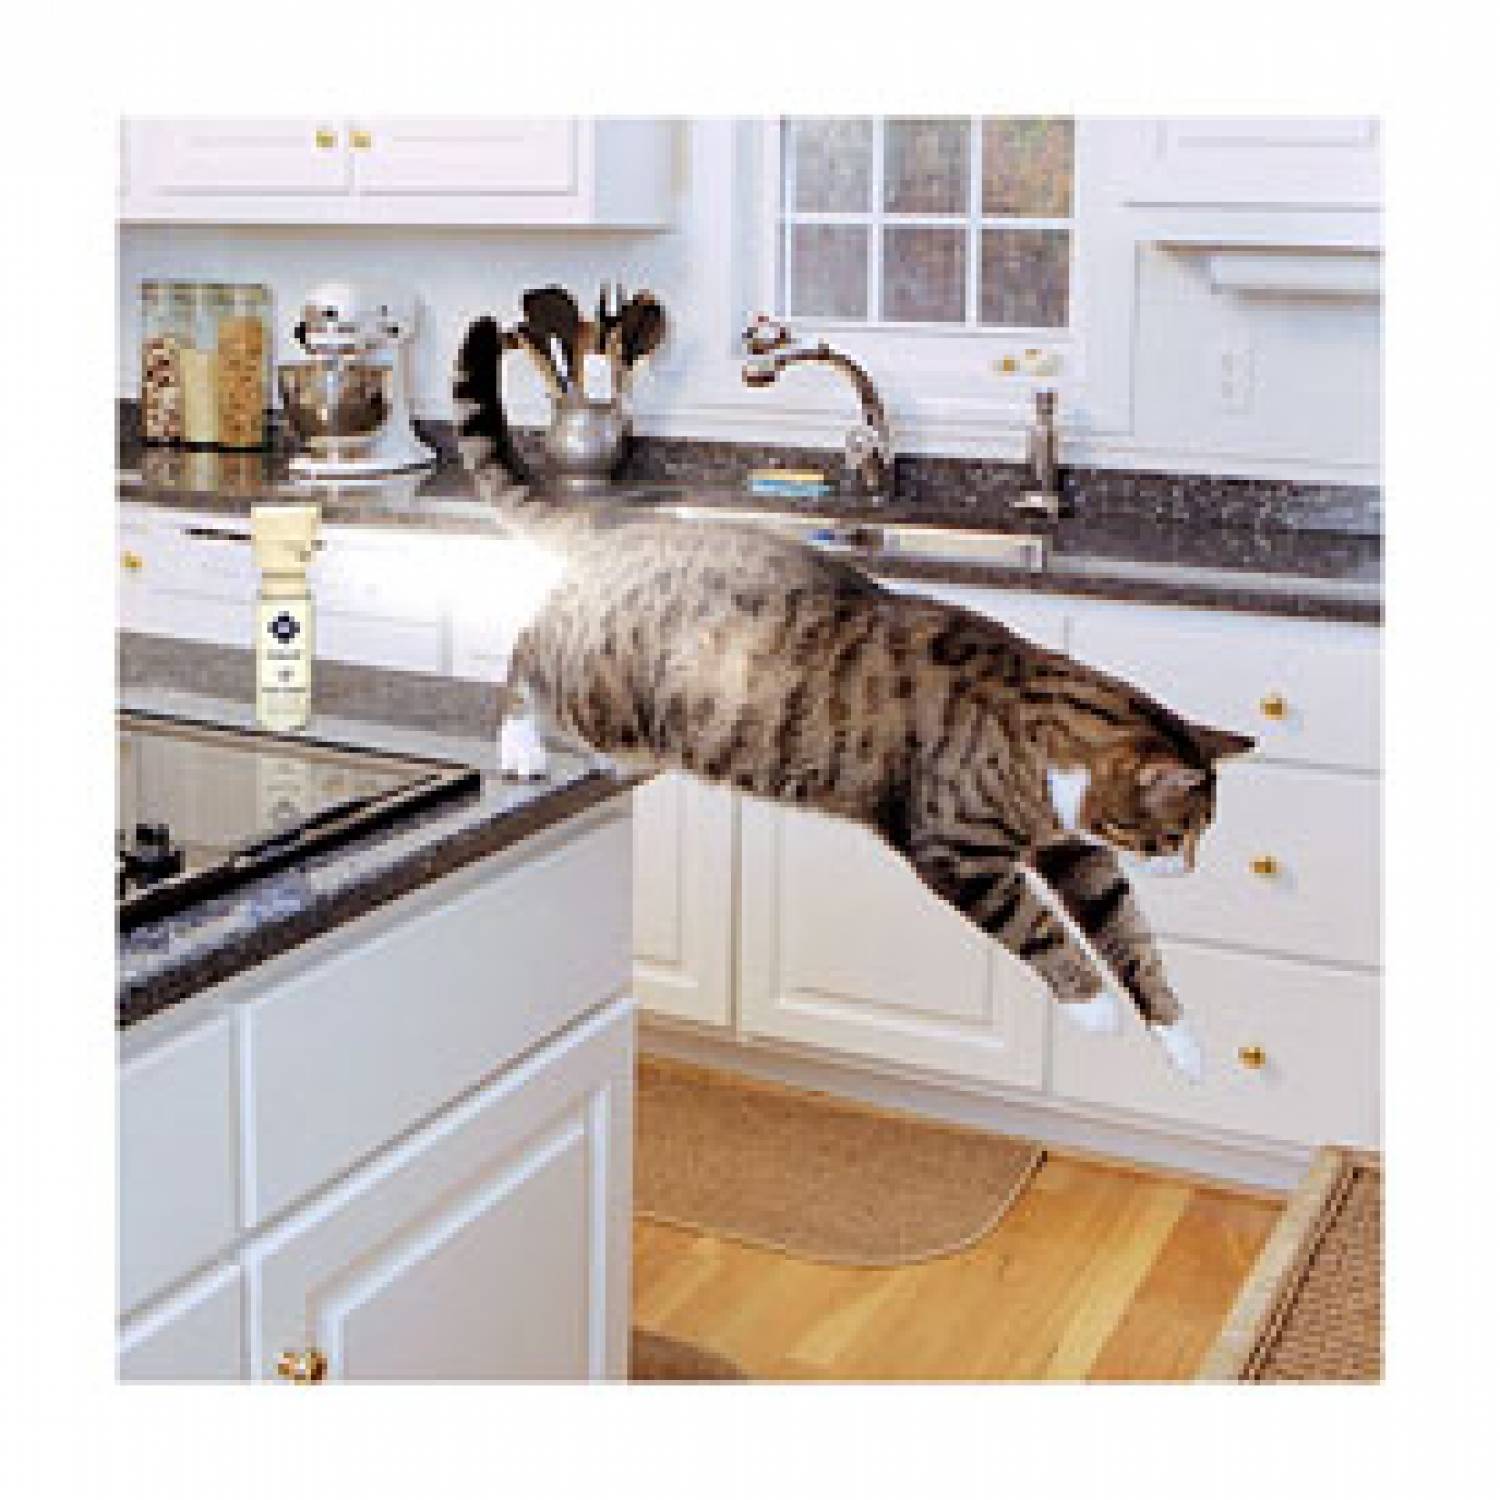 Как отучить кота лазить на стол: 5 действенных способов